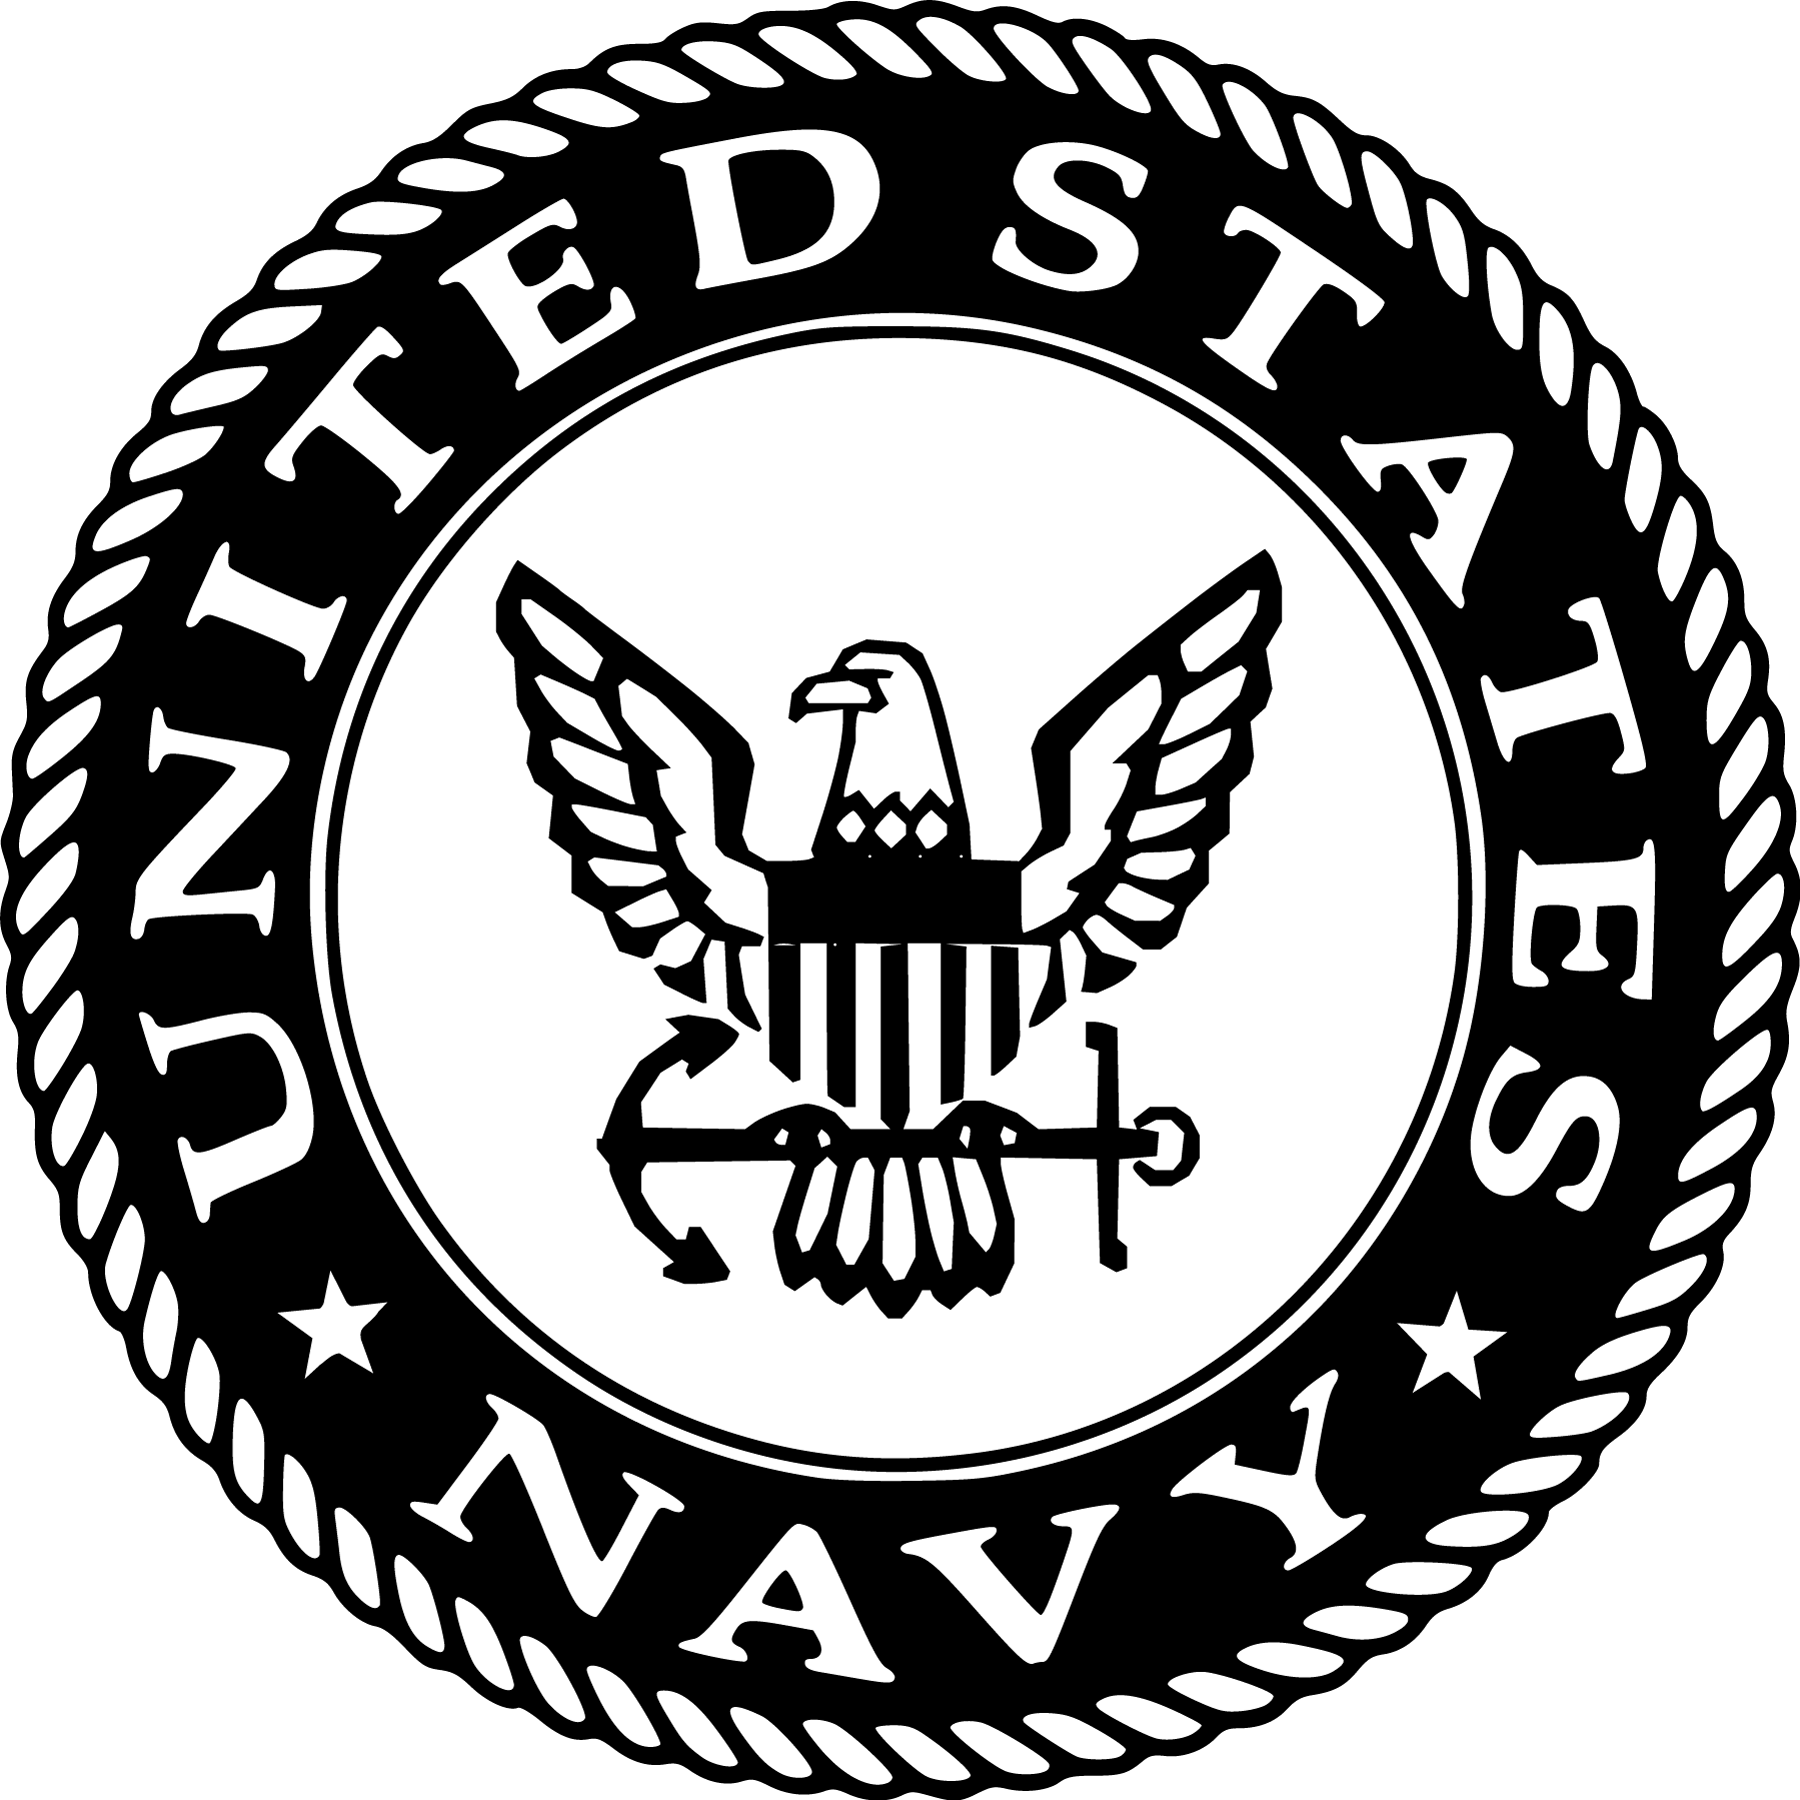 navy-logo-102.png (1800×1800